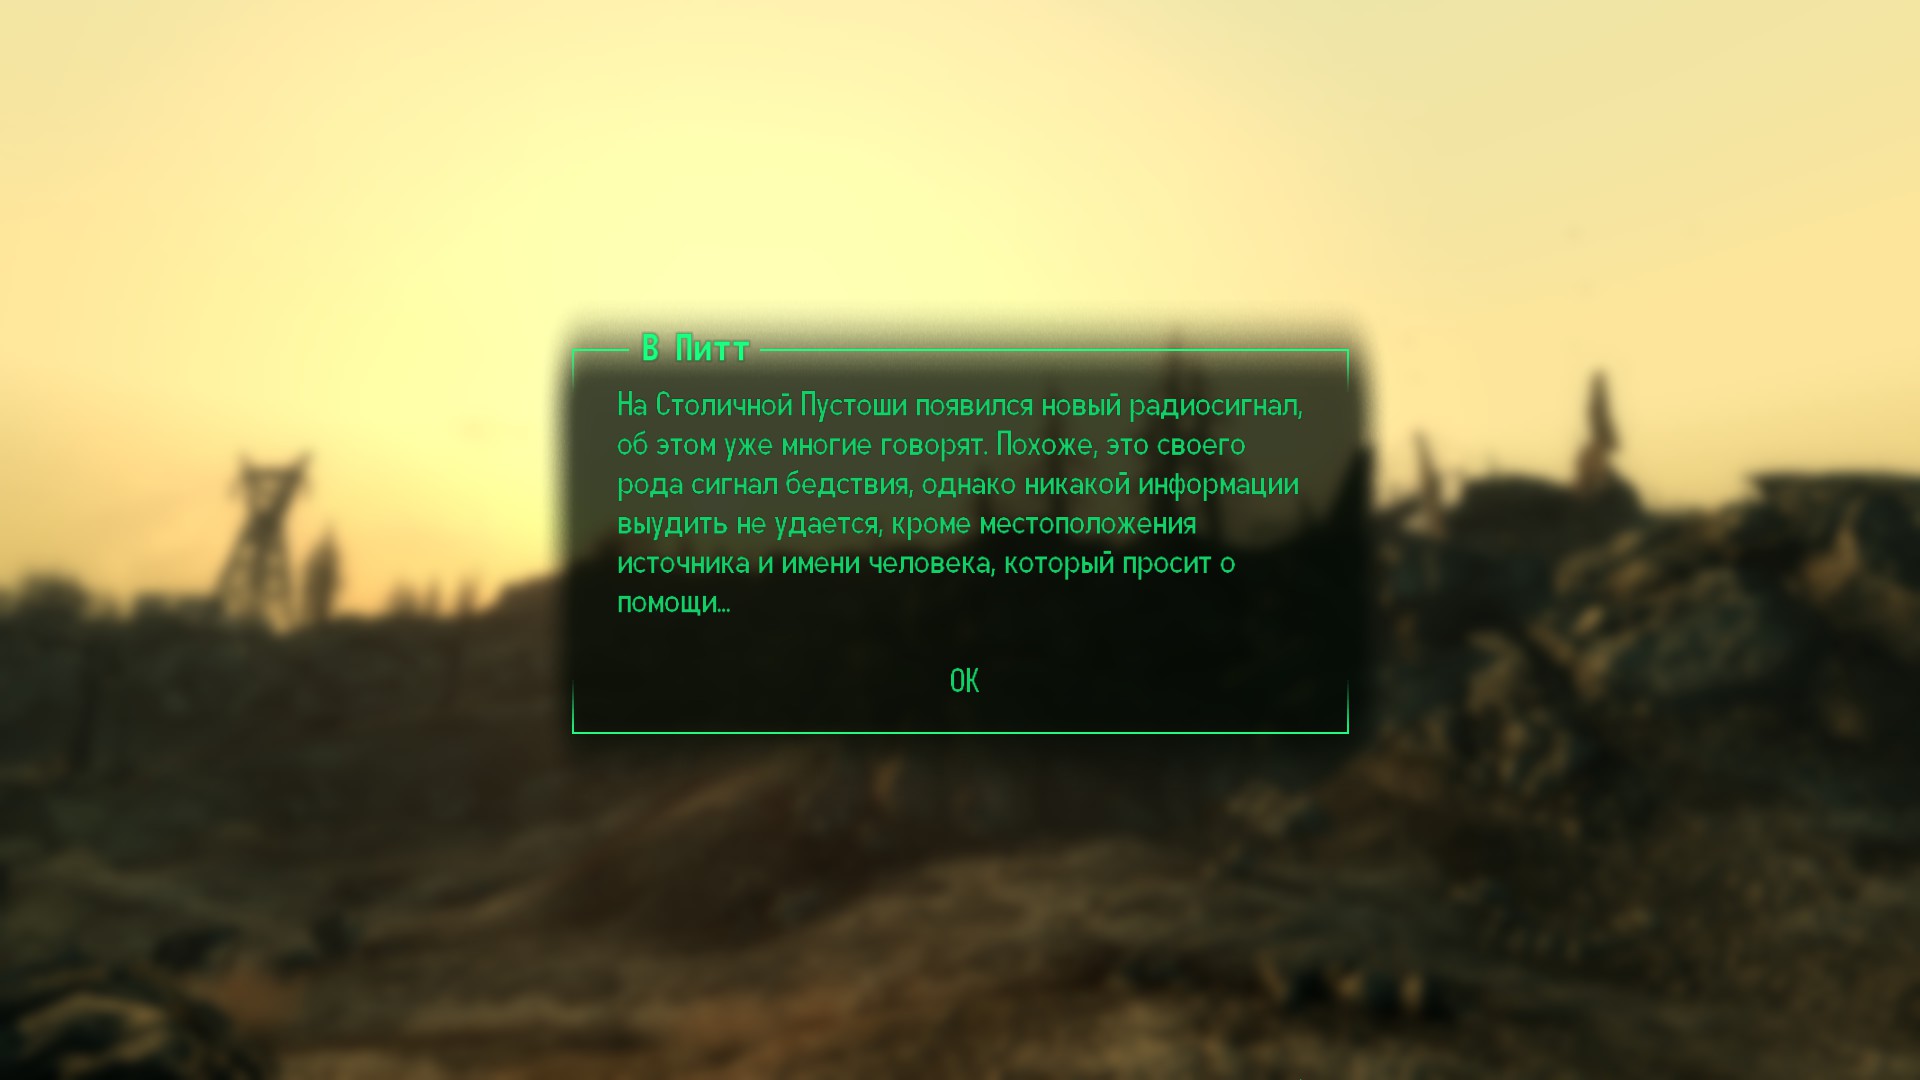 Устанавливаем Xlive.dll для Fallout 3